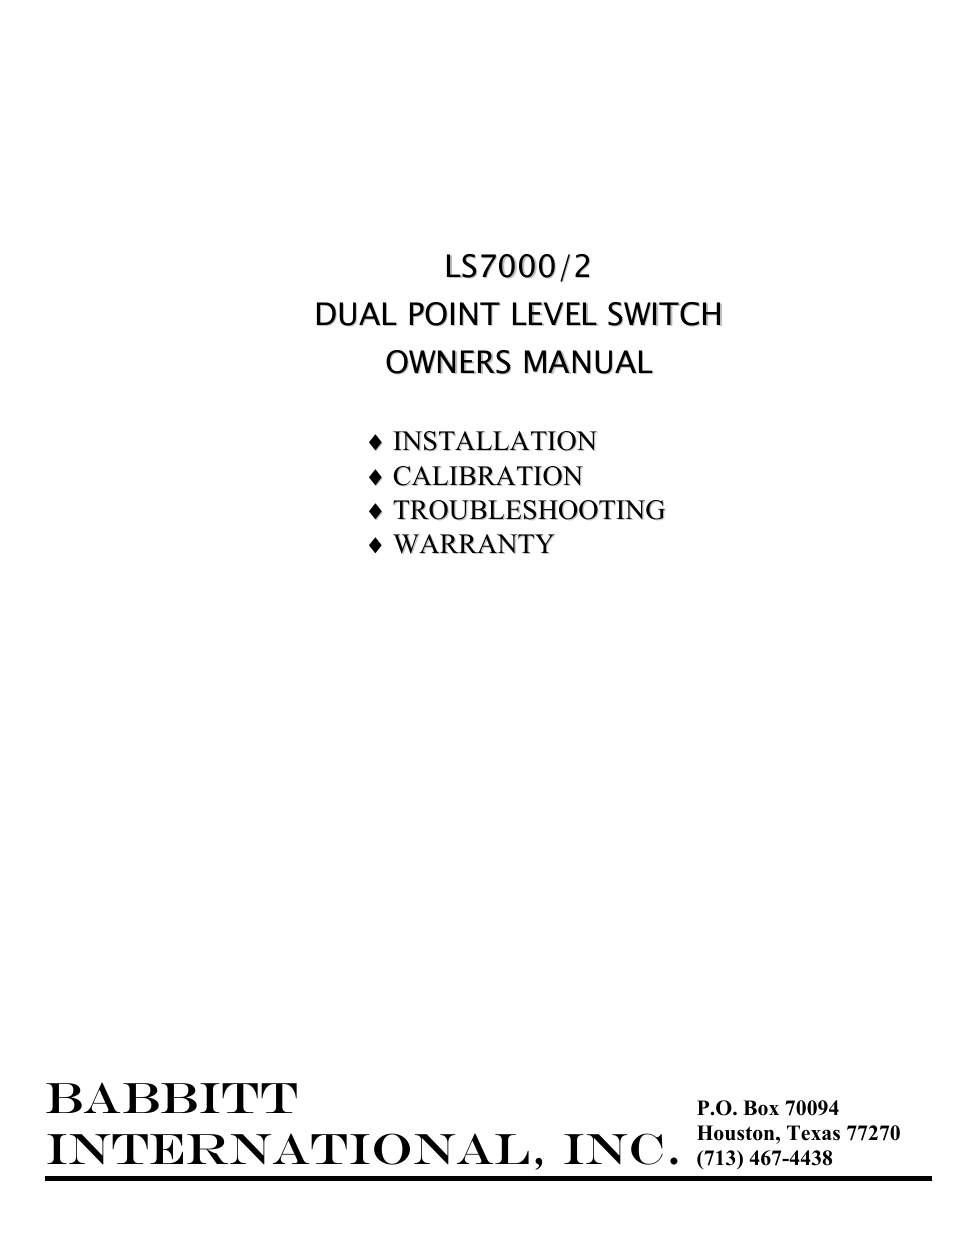 LS7000/2 Dual-Point Sensor